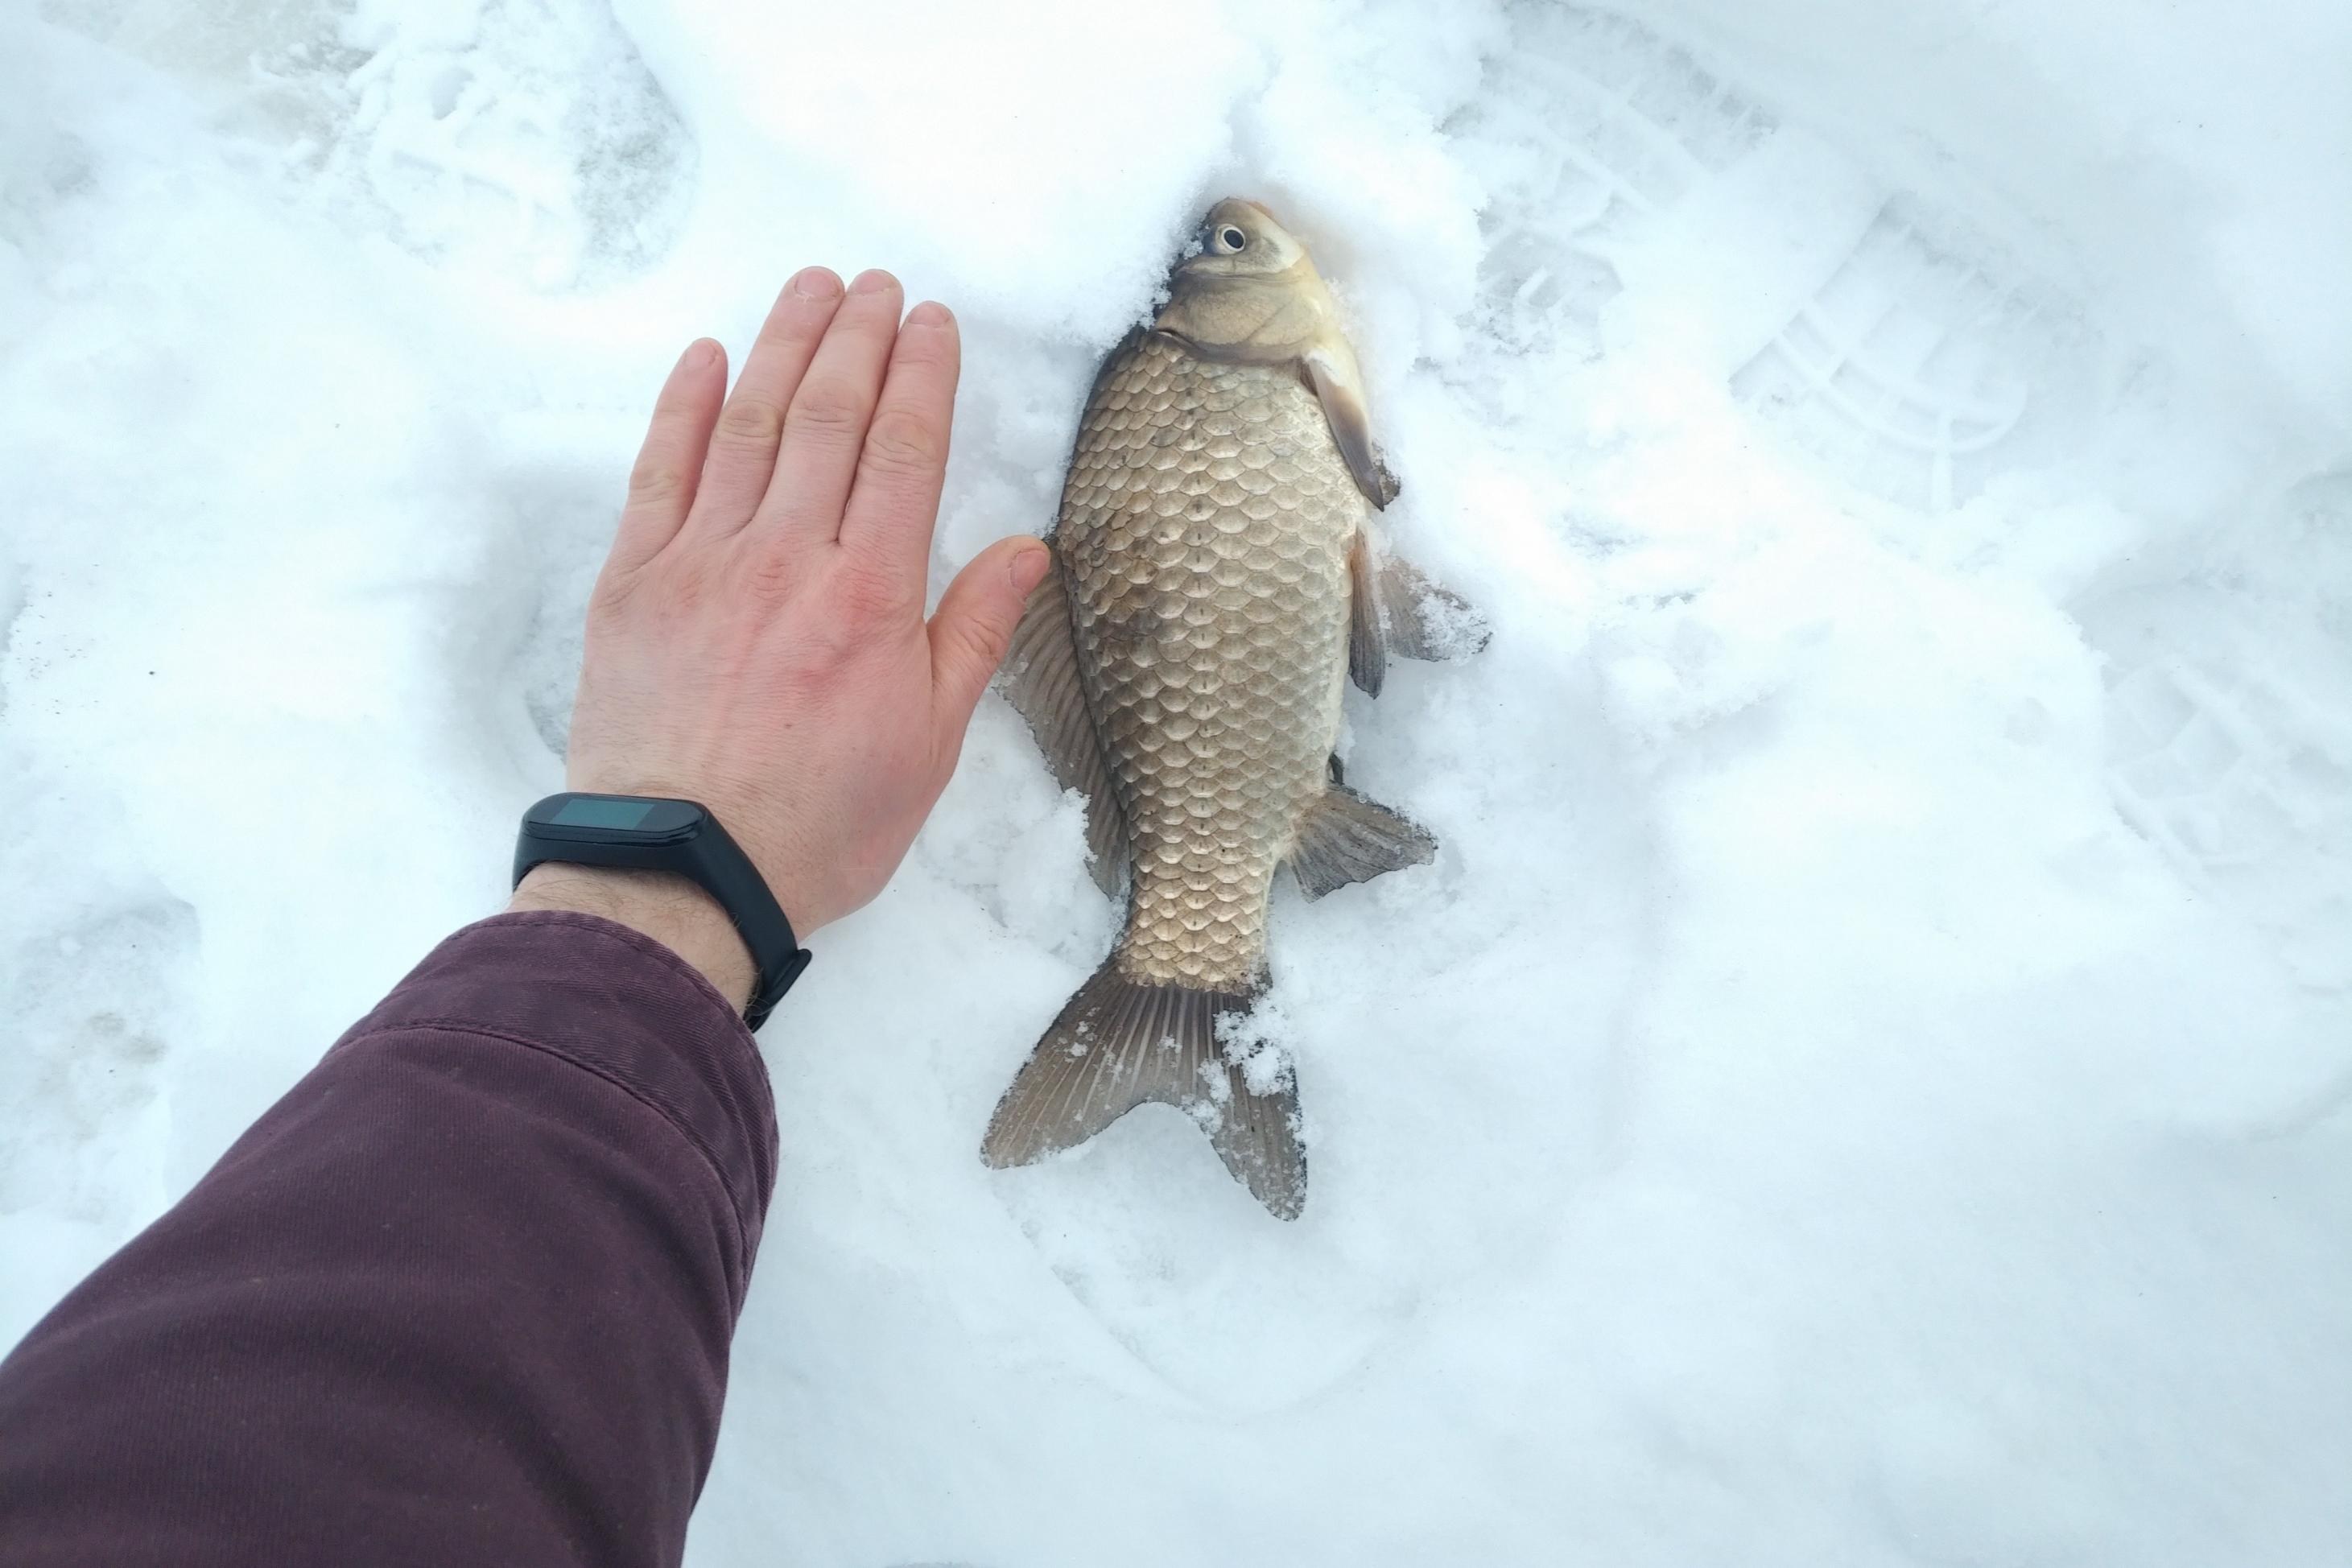  Был 23.01, погода для ловли супер комфор тная ... | Отчеты о рыбалке в Беларуси